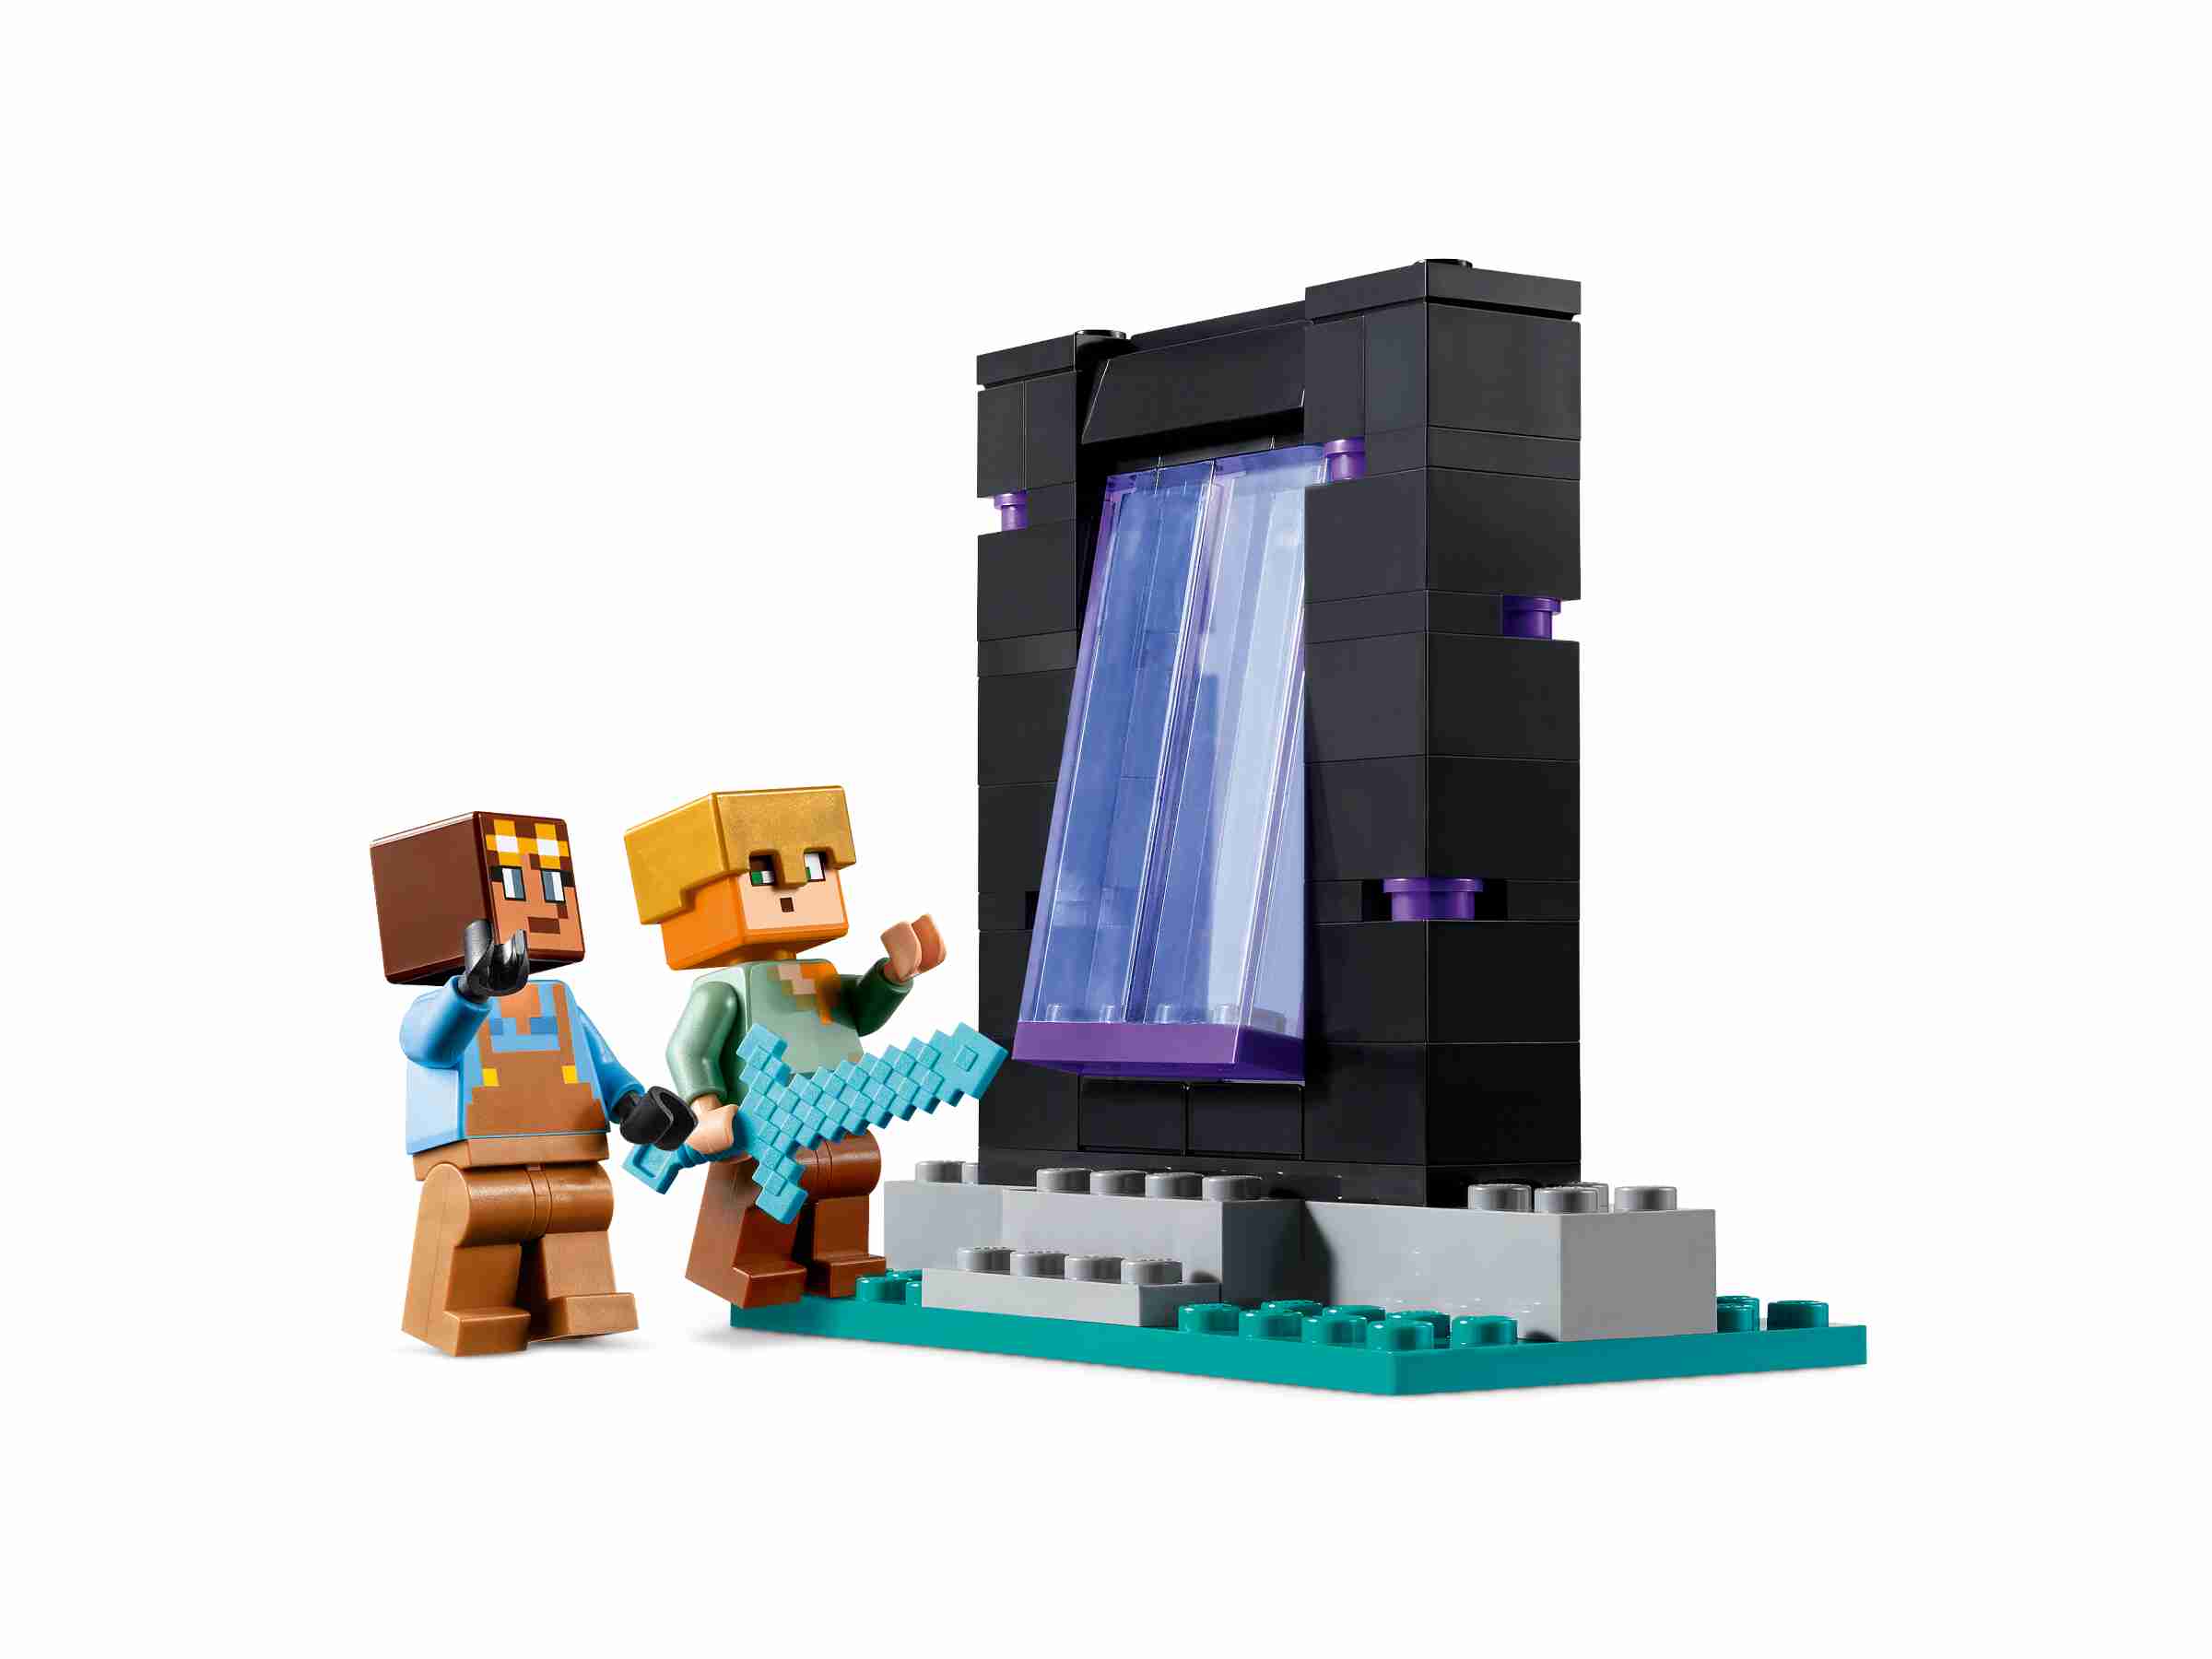 LEGO 21252 Minecraft Die Waffenkammer, Alex, Waffenschmied, Netherportal